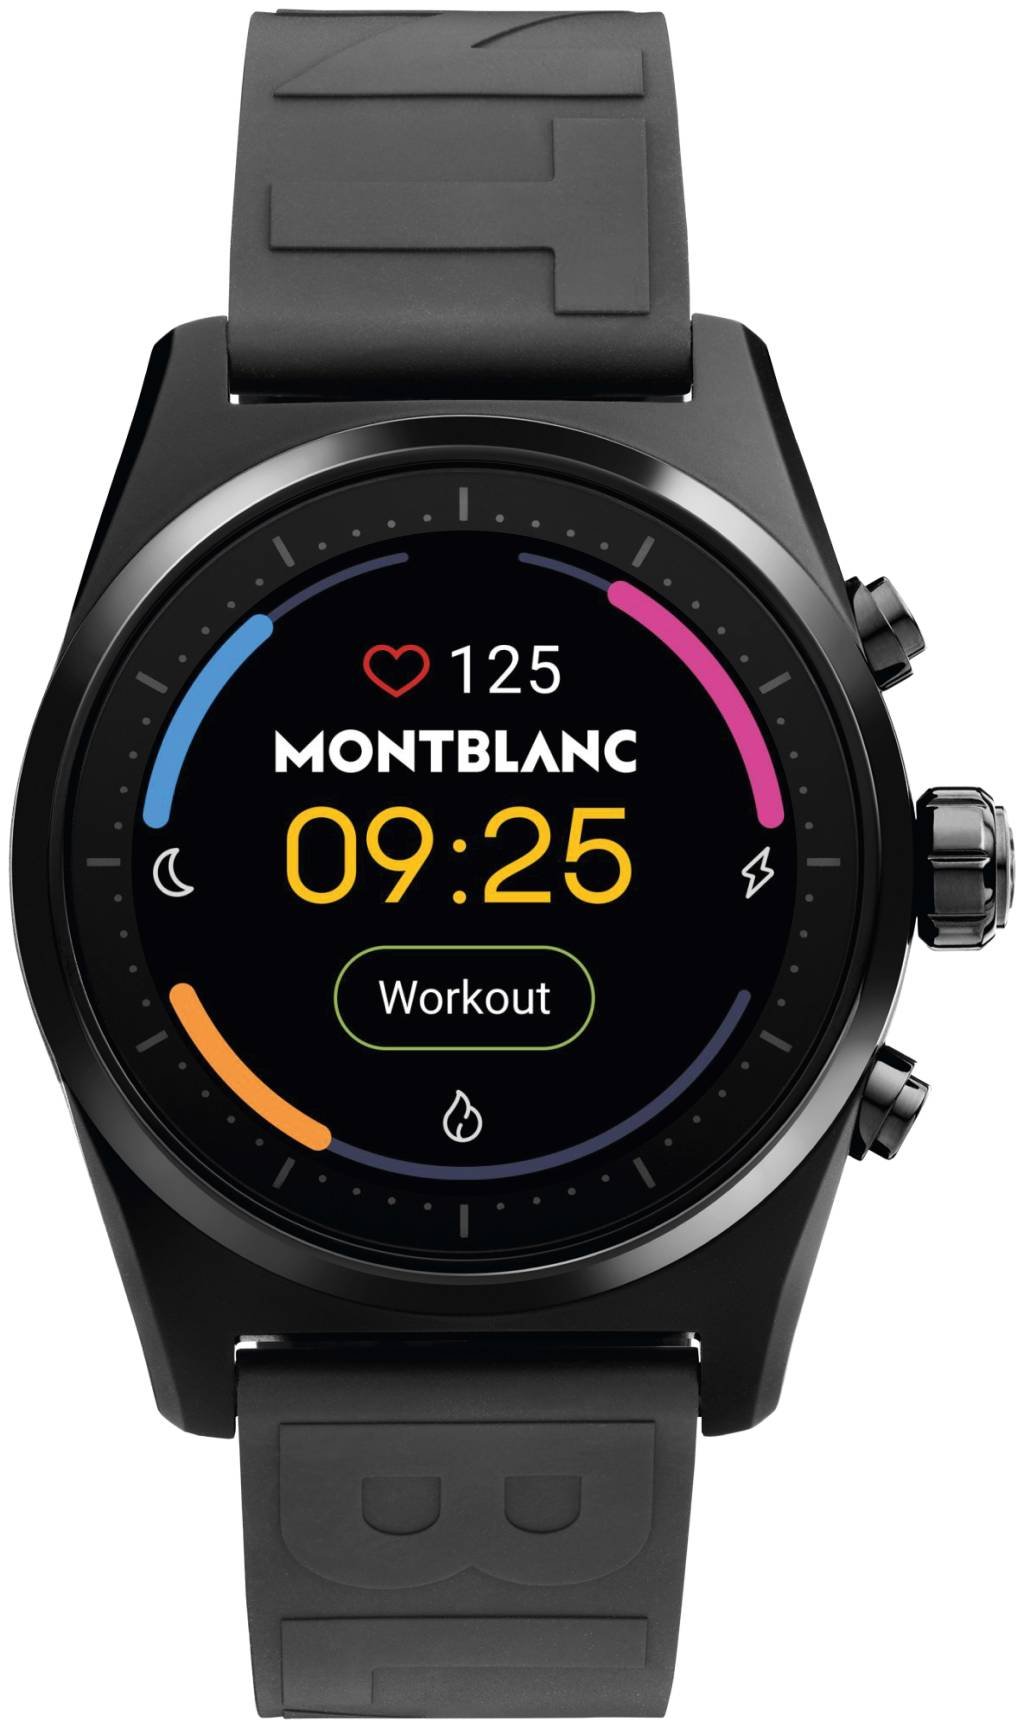 Montblanc lança smartwatch que traz informações sobre a saúde do usuário